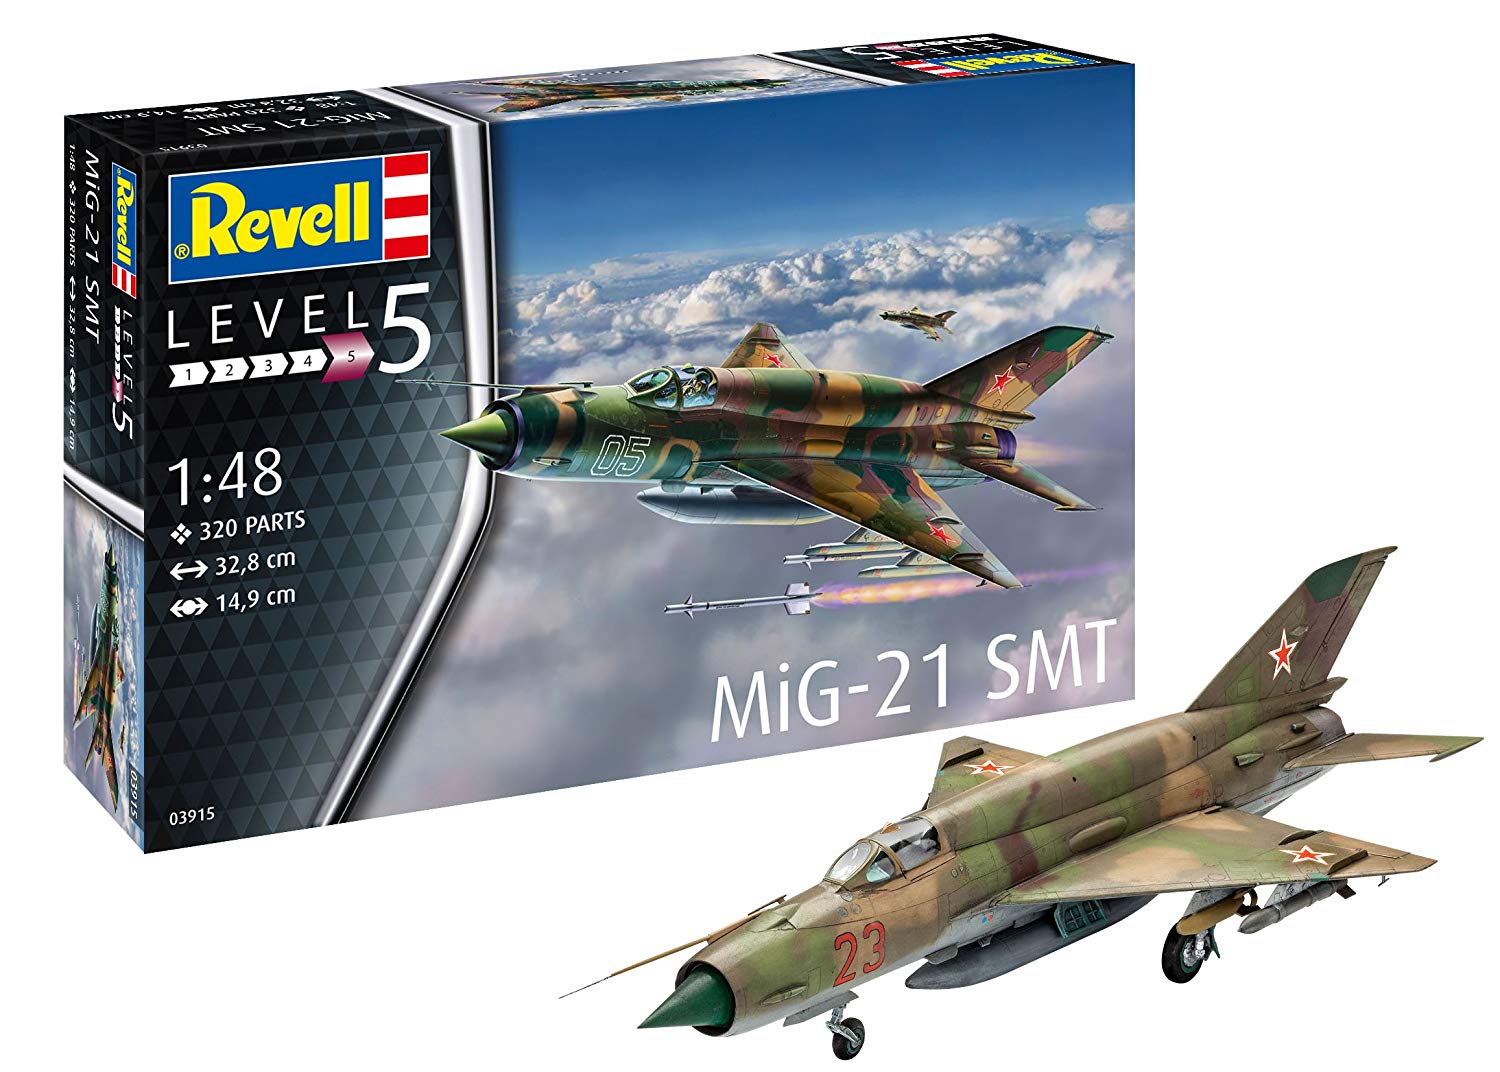 Revell Scale Model Kit Mig Smt Level